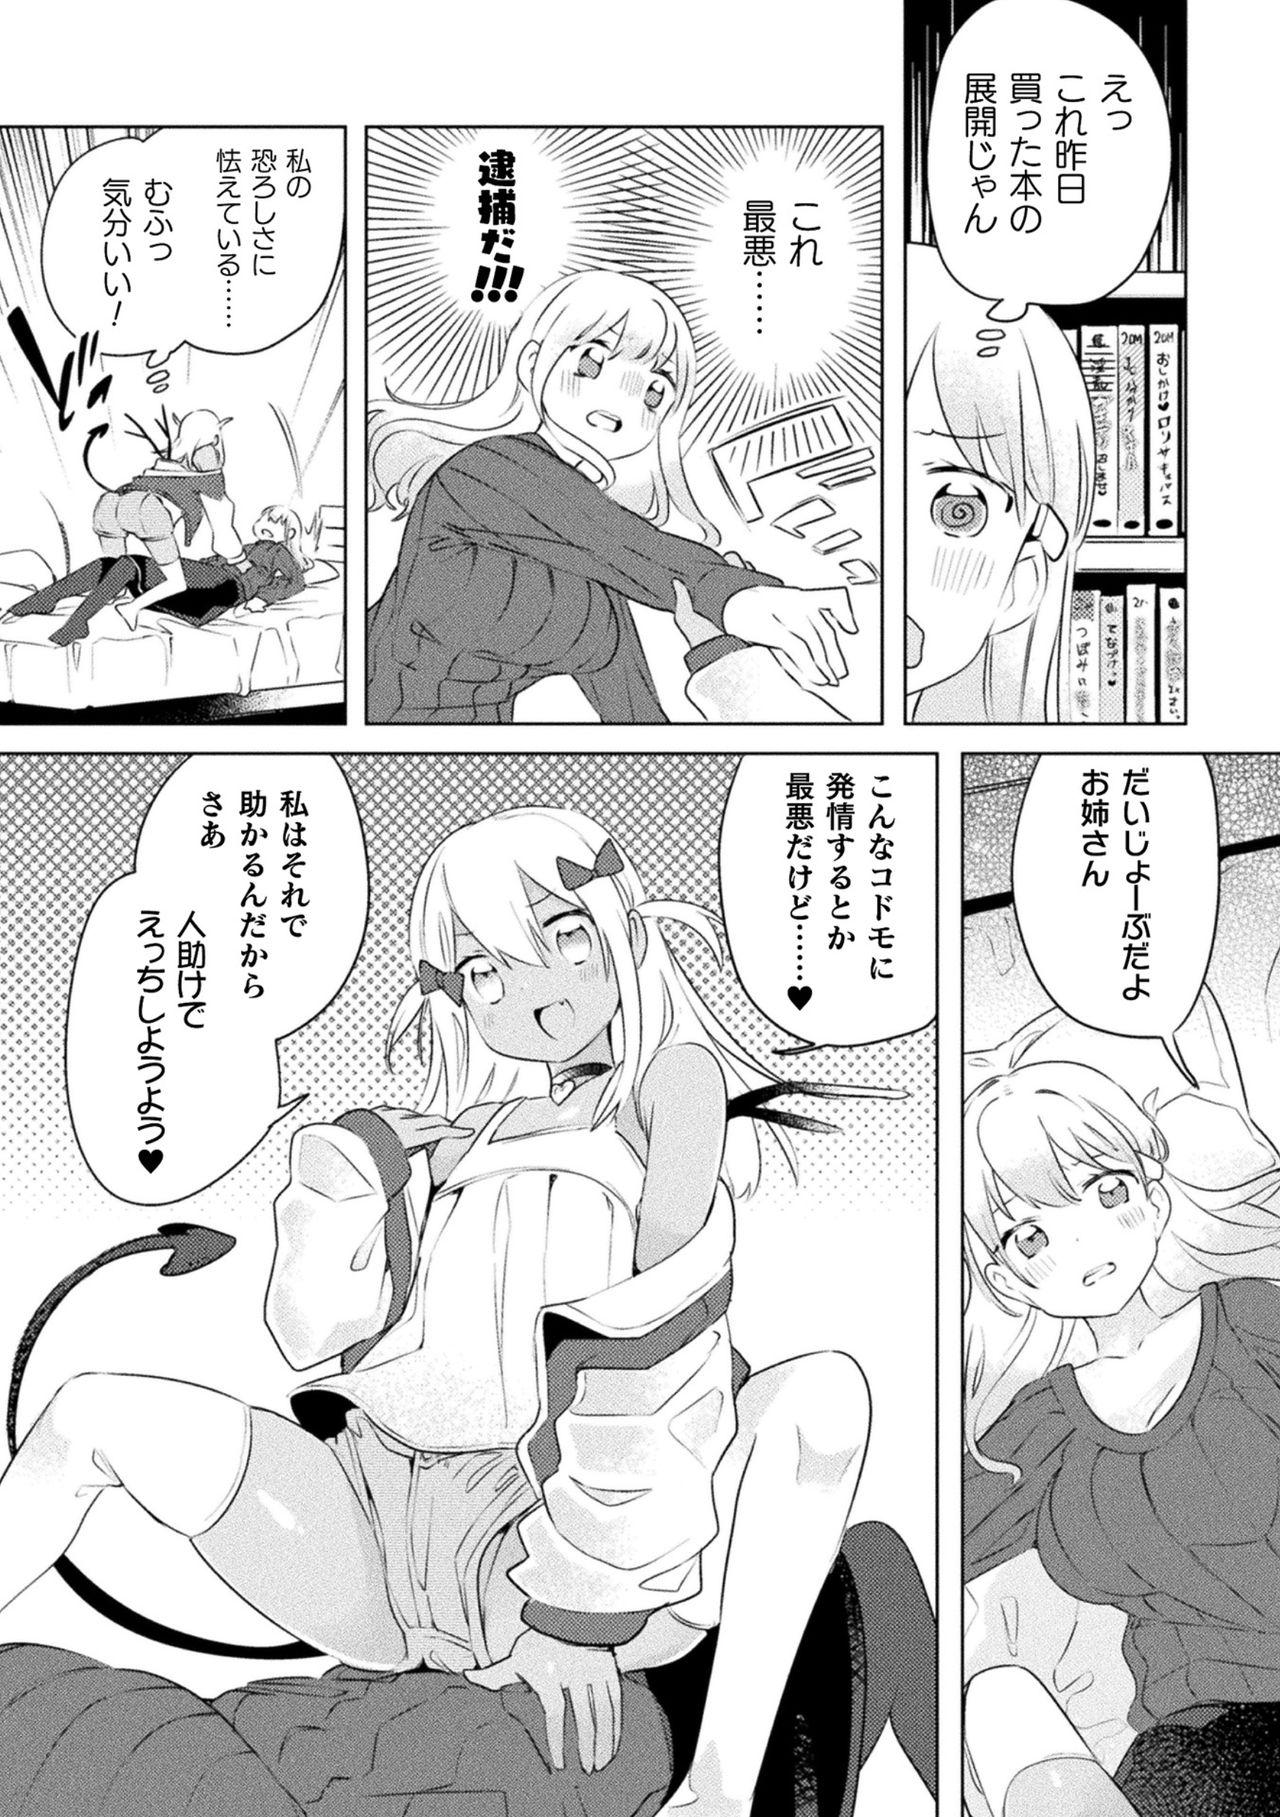 2D Comic Magazine Mesugaki vs Yasashii Onee-san Vol. 1 53